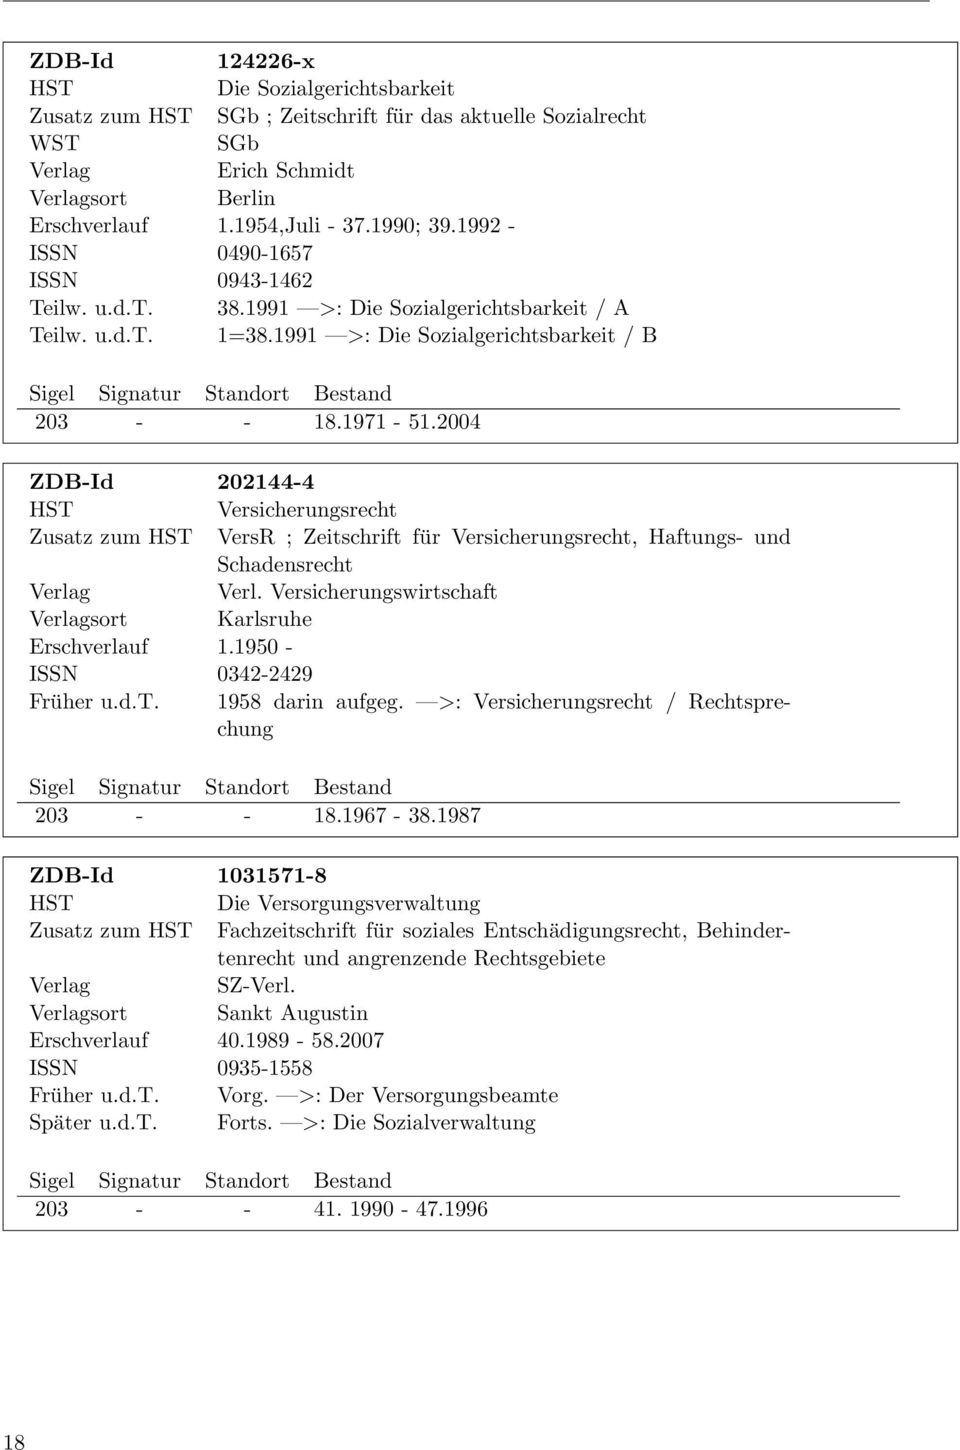 2004 ZDB-Id 202144-4 Versicherungsrecht Zusatz zum VersR ; Zeitschrift für Versicherungsrecht, Haftungs- und Schadensrecht Verl. Versicherungswirtschaft sort Karlsruhe Erschverlauf 1.